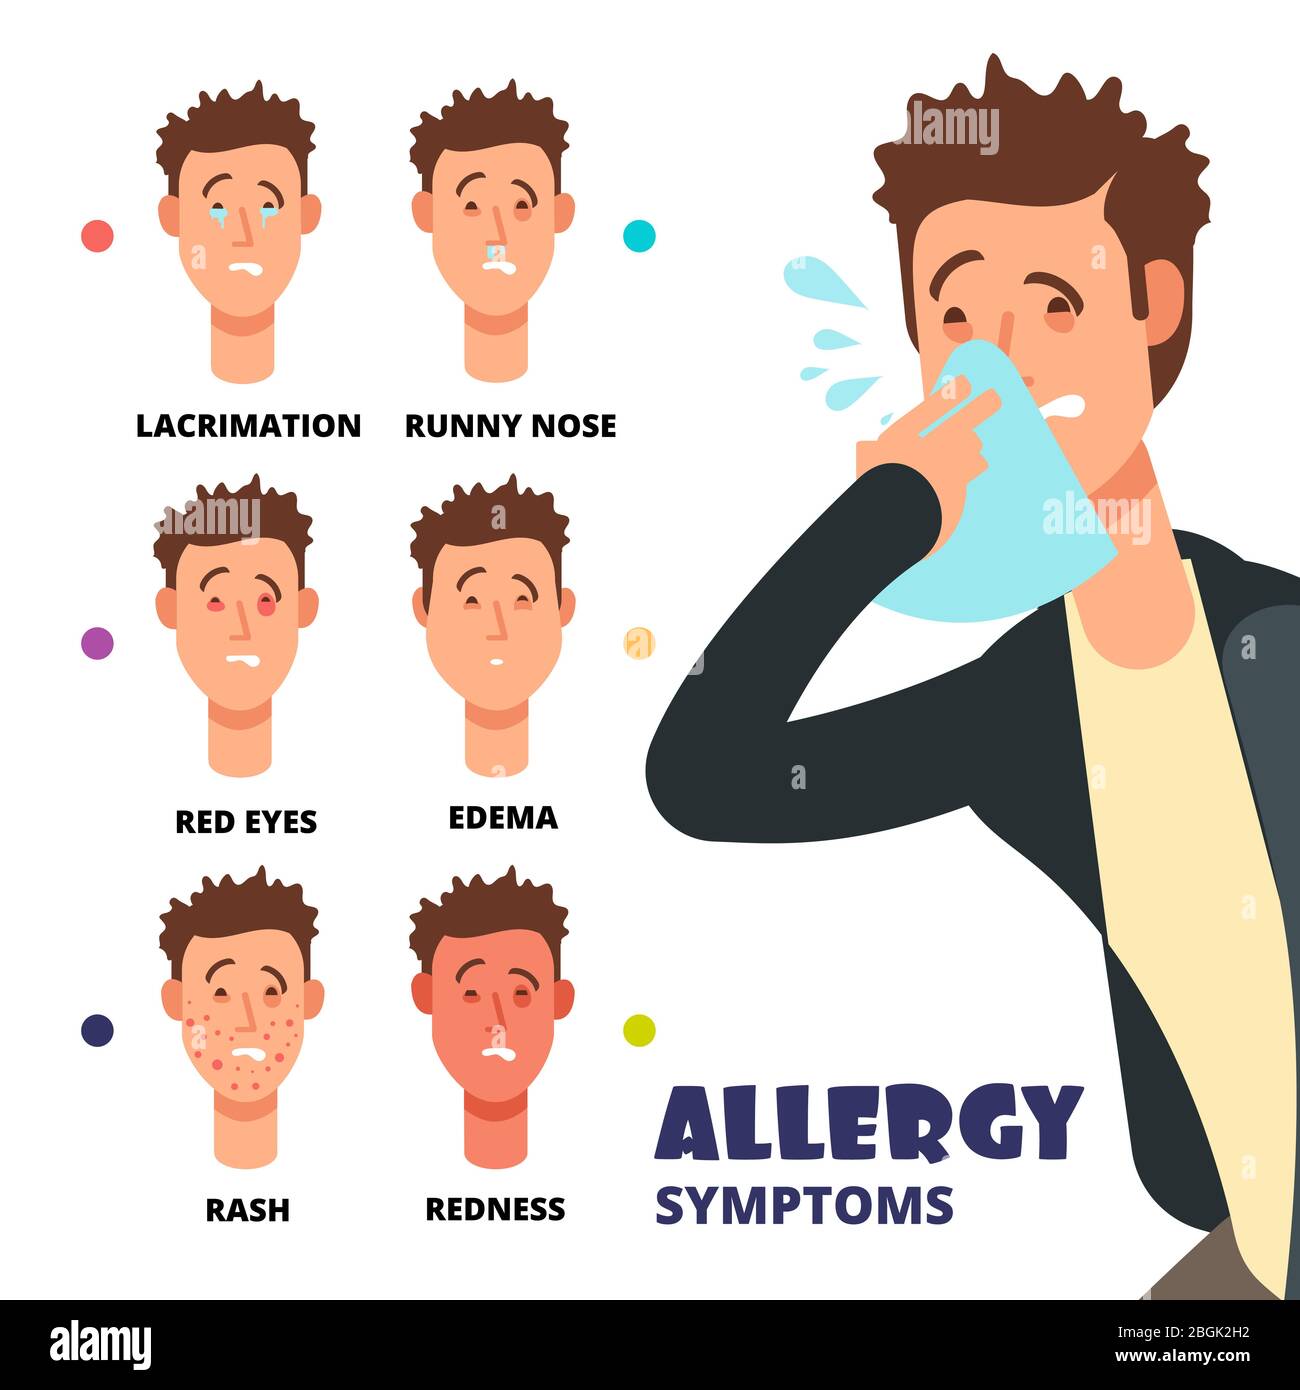 Allergie Symptome Vektor Illustration - Cartoon medizinische Infografik. Allergischer Hautausschlag, Ödem und Rötung, Niesen und laufende Nase Stock Vektor